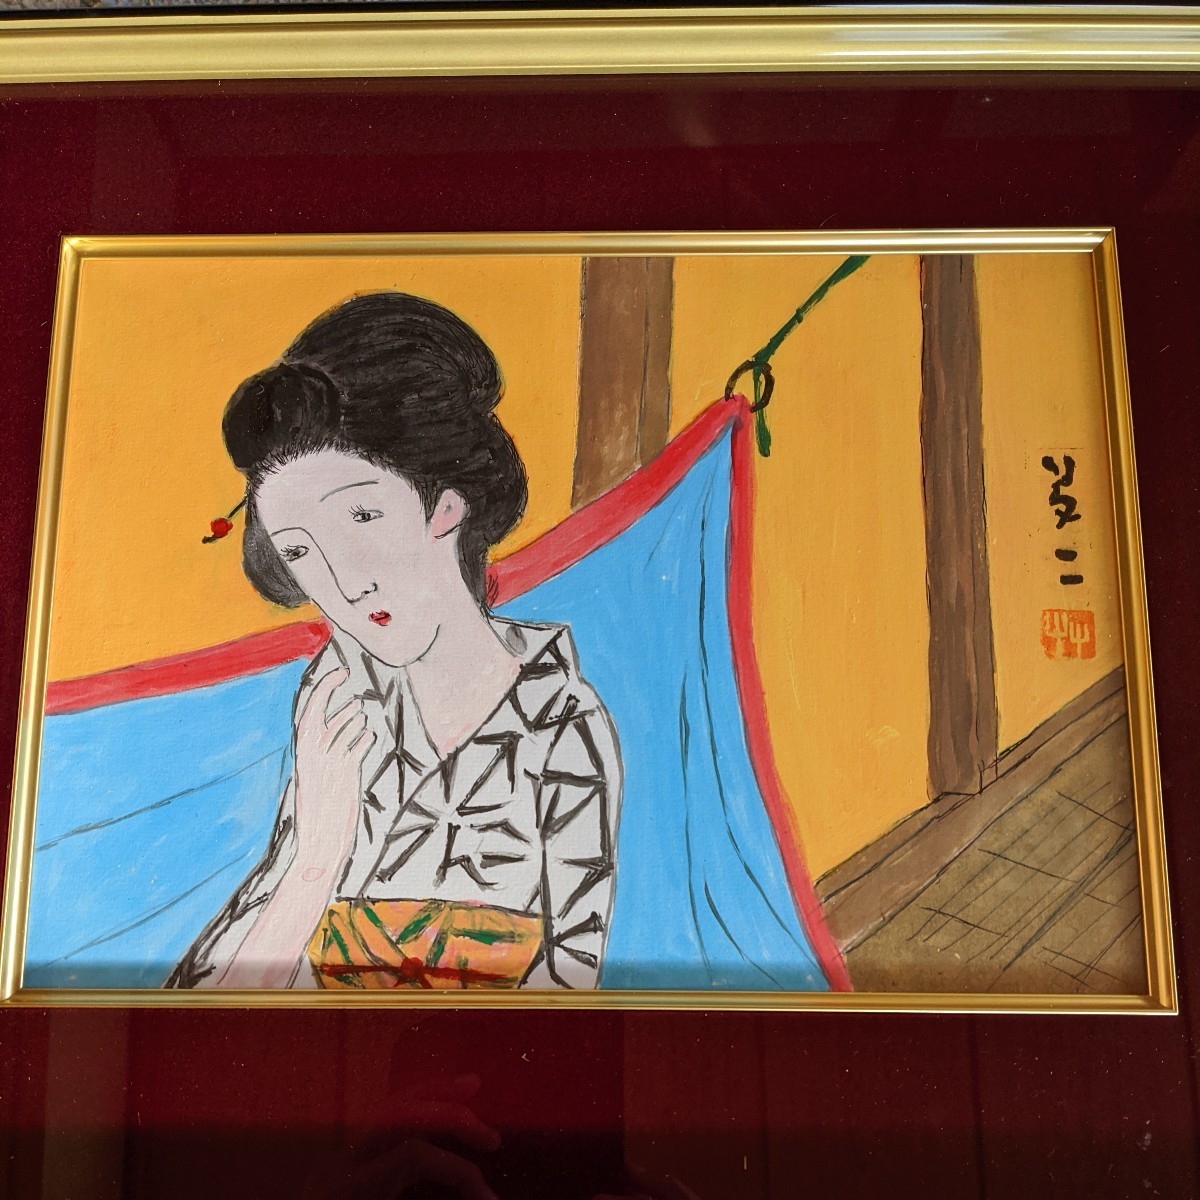 [Kopie] Yumeji Takehisa Yukata Schönheitsgemälde, Malerei, Japanische Malerei, Person, Bodhisattva